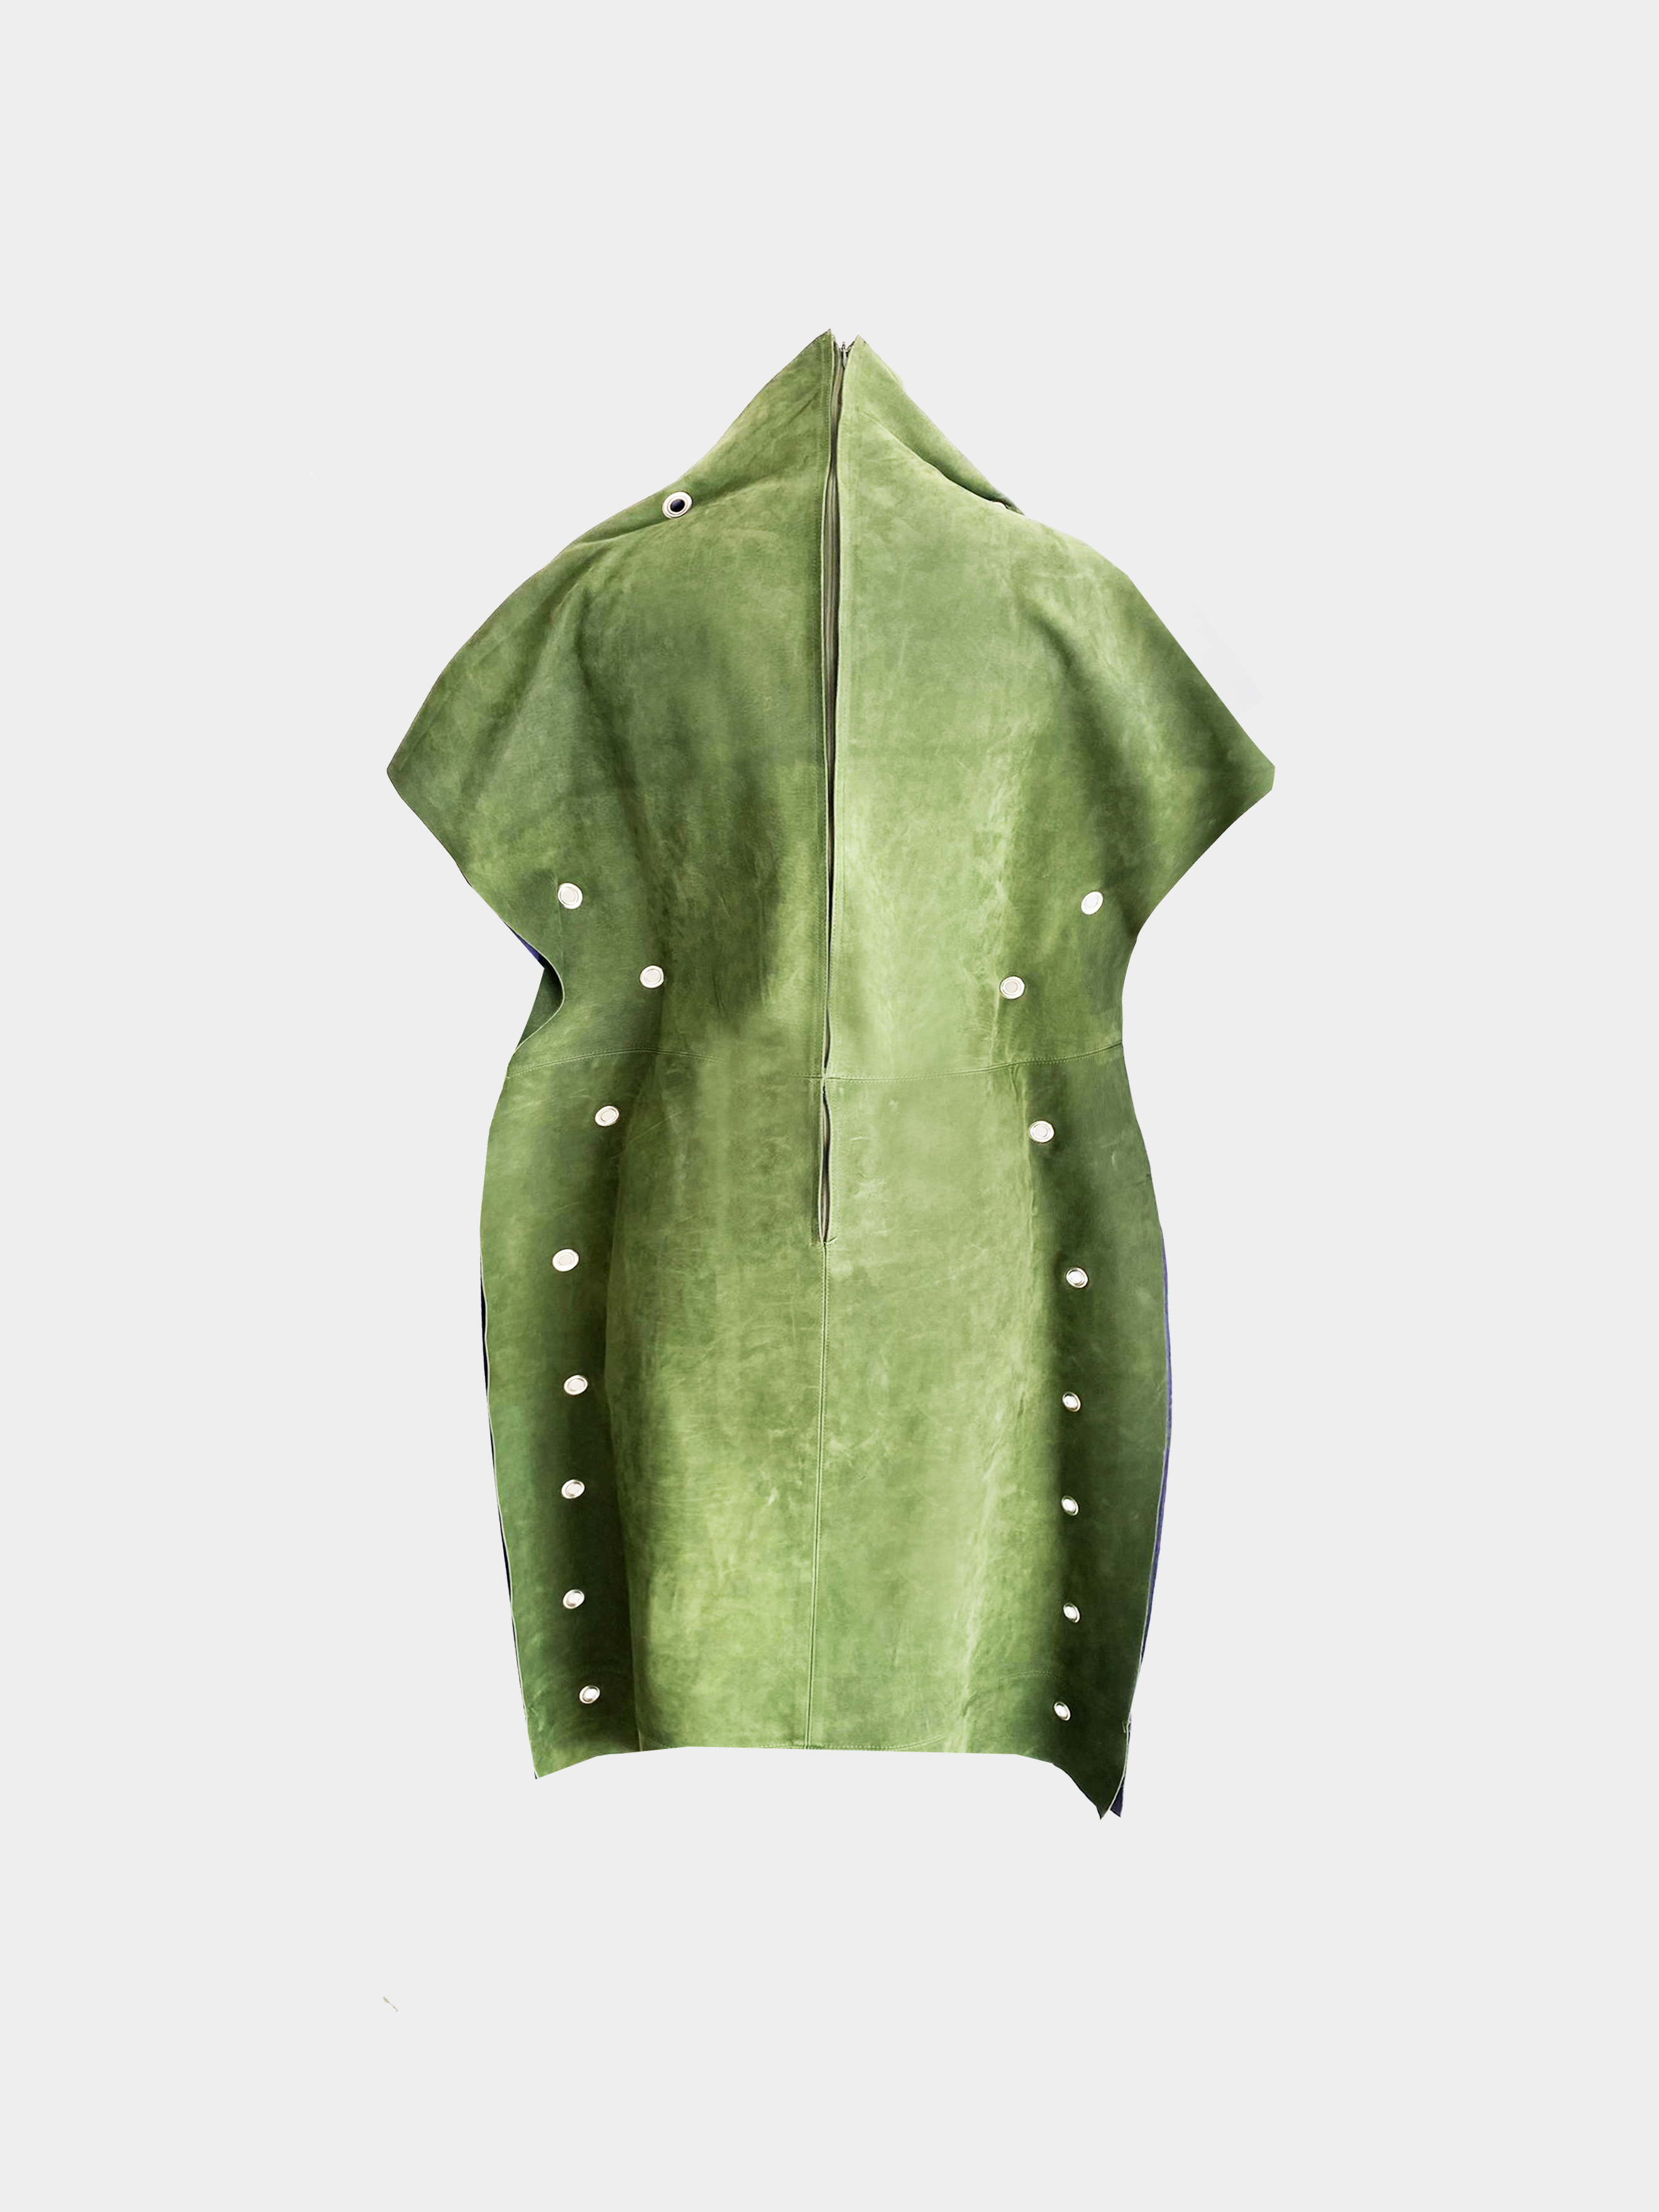 Celine by Phoebe Philo 2018 Leather Dress Prototype